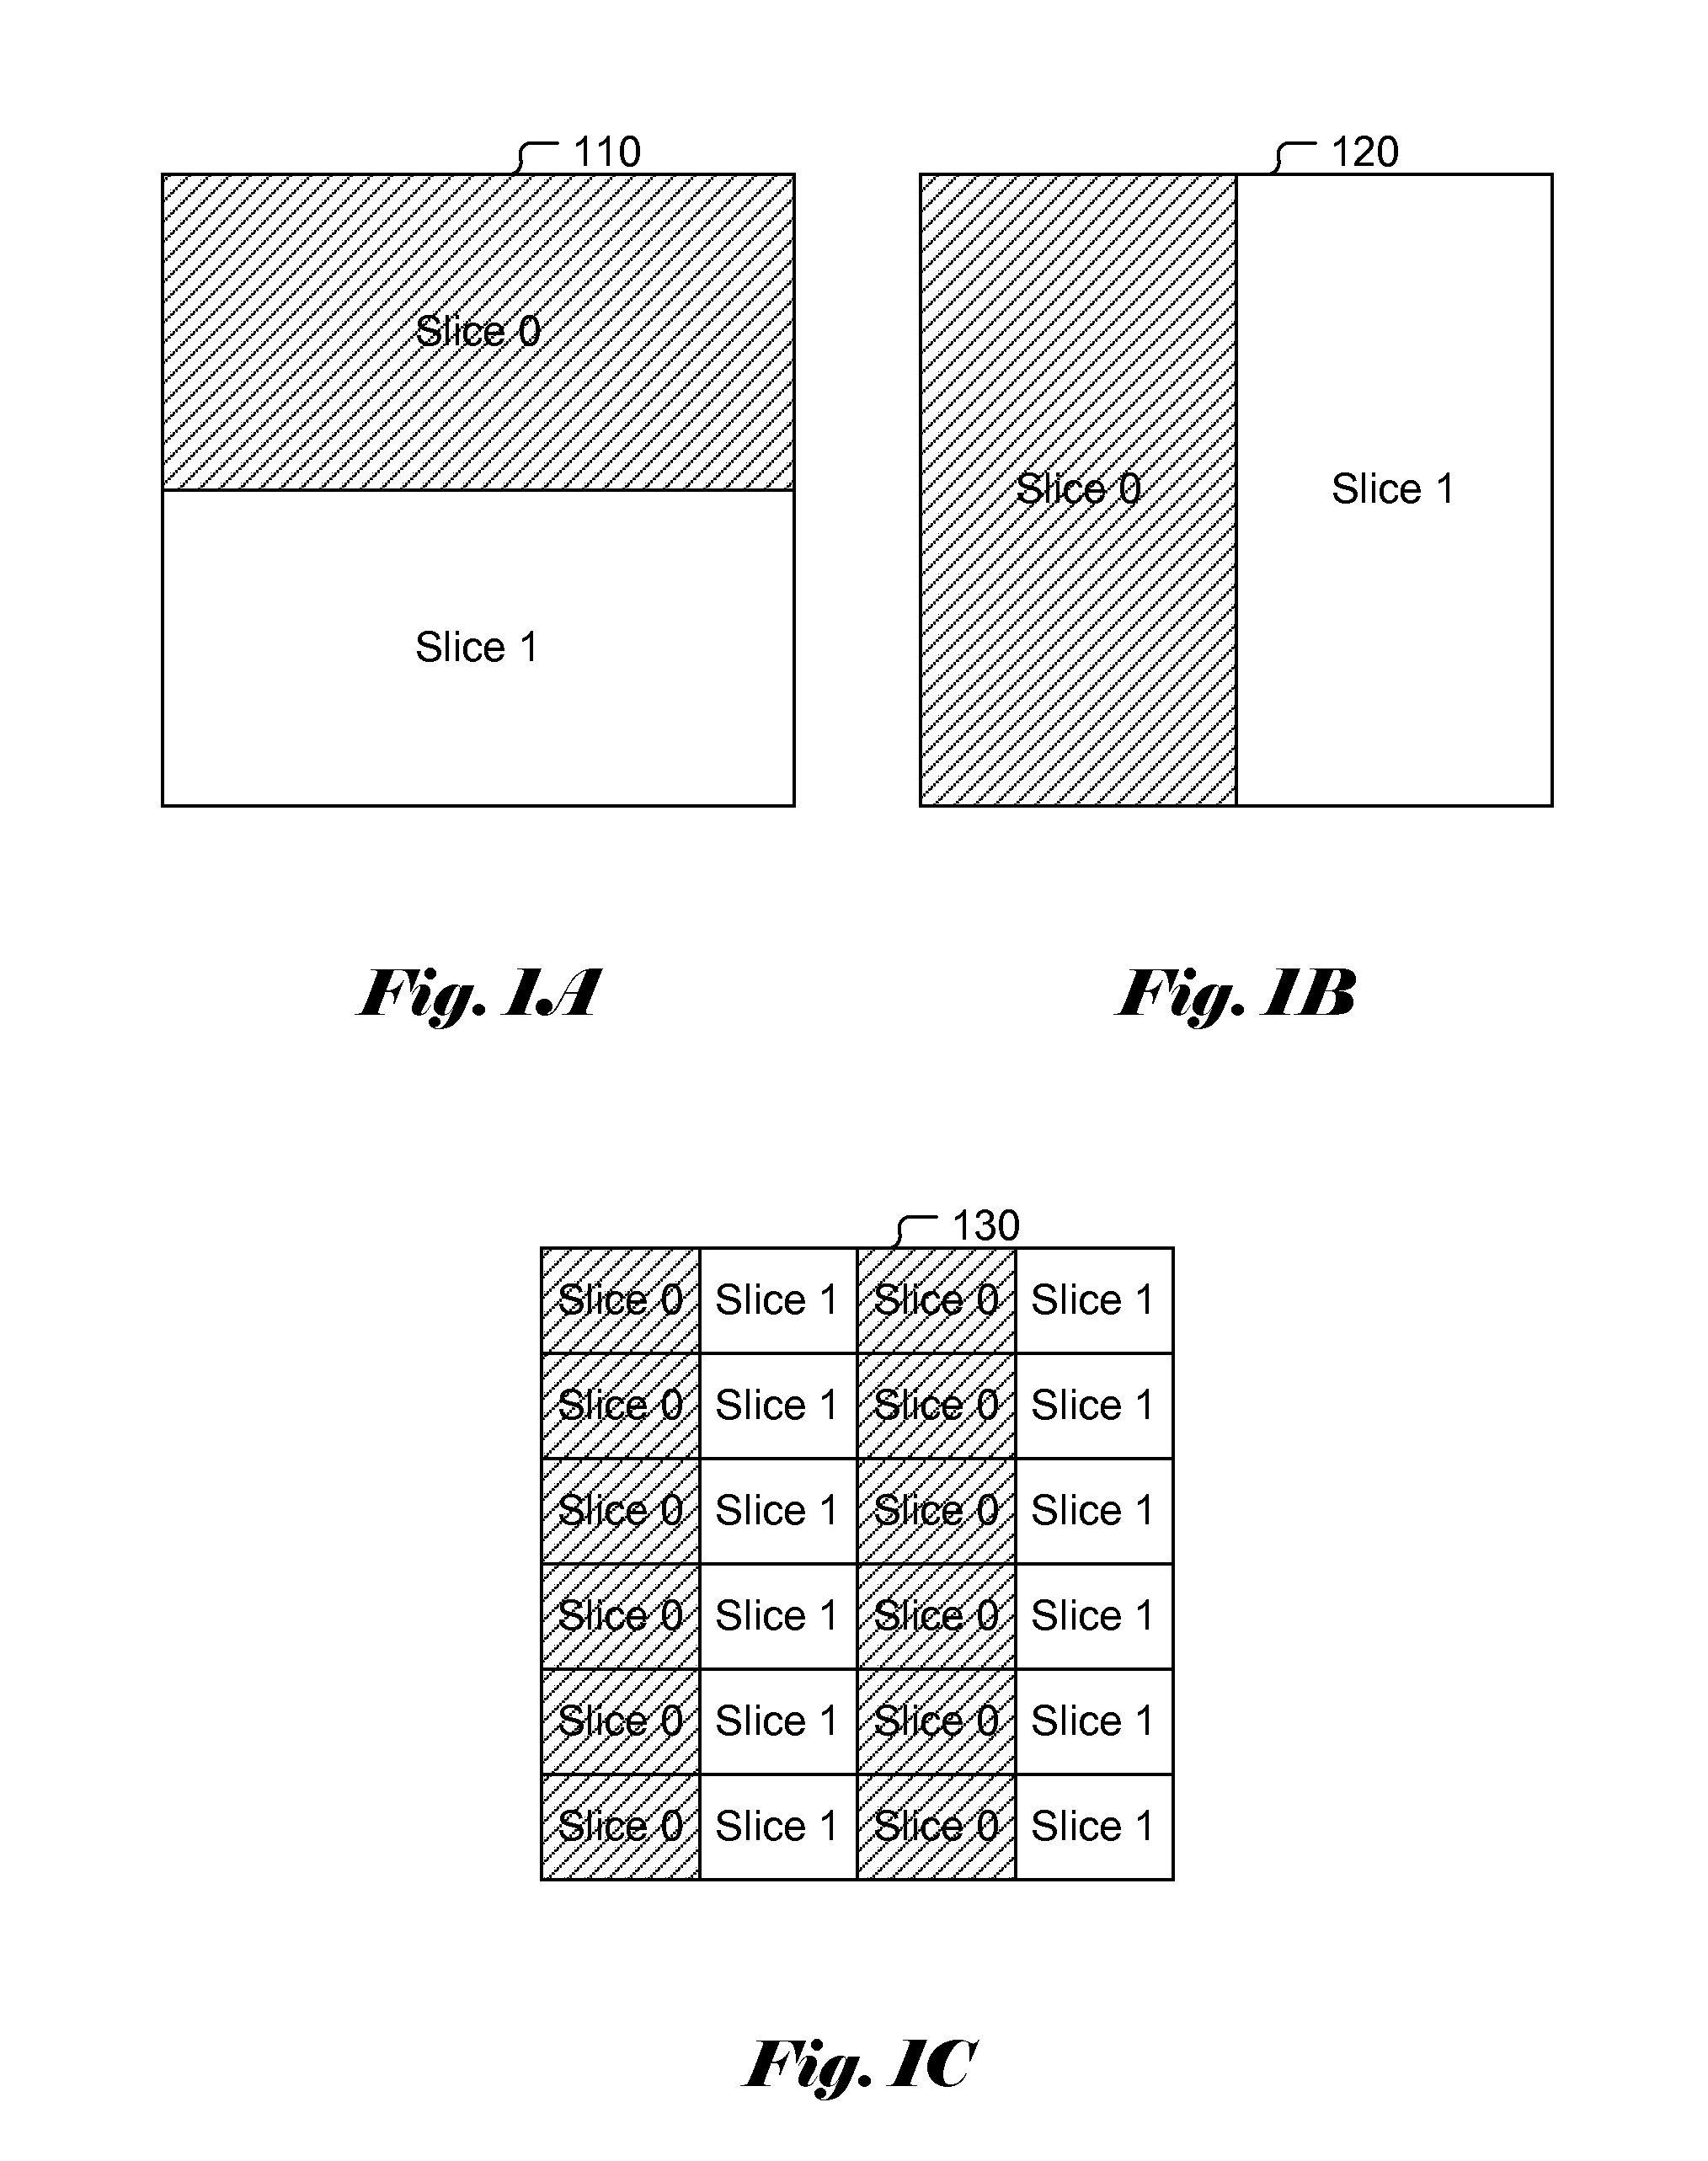 Methods of Multiple-Slice Coding for Frame Buffer Compression